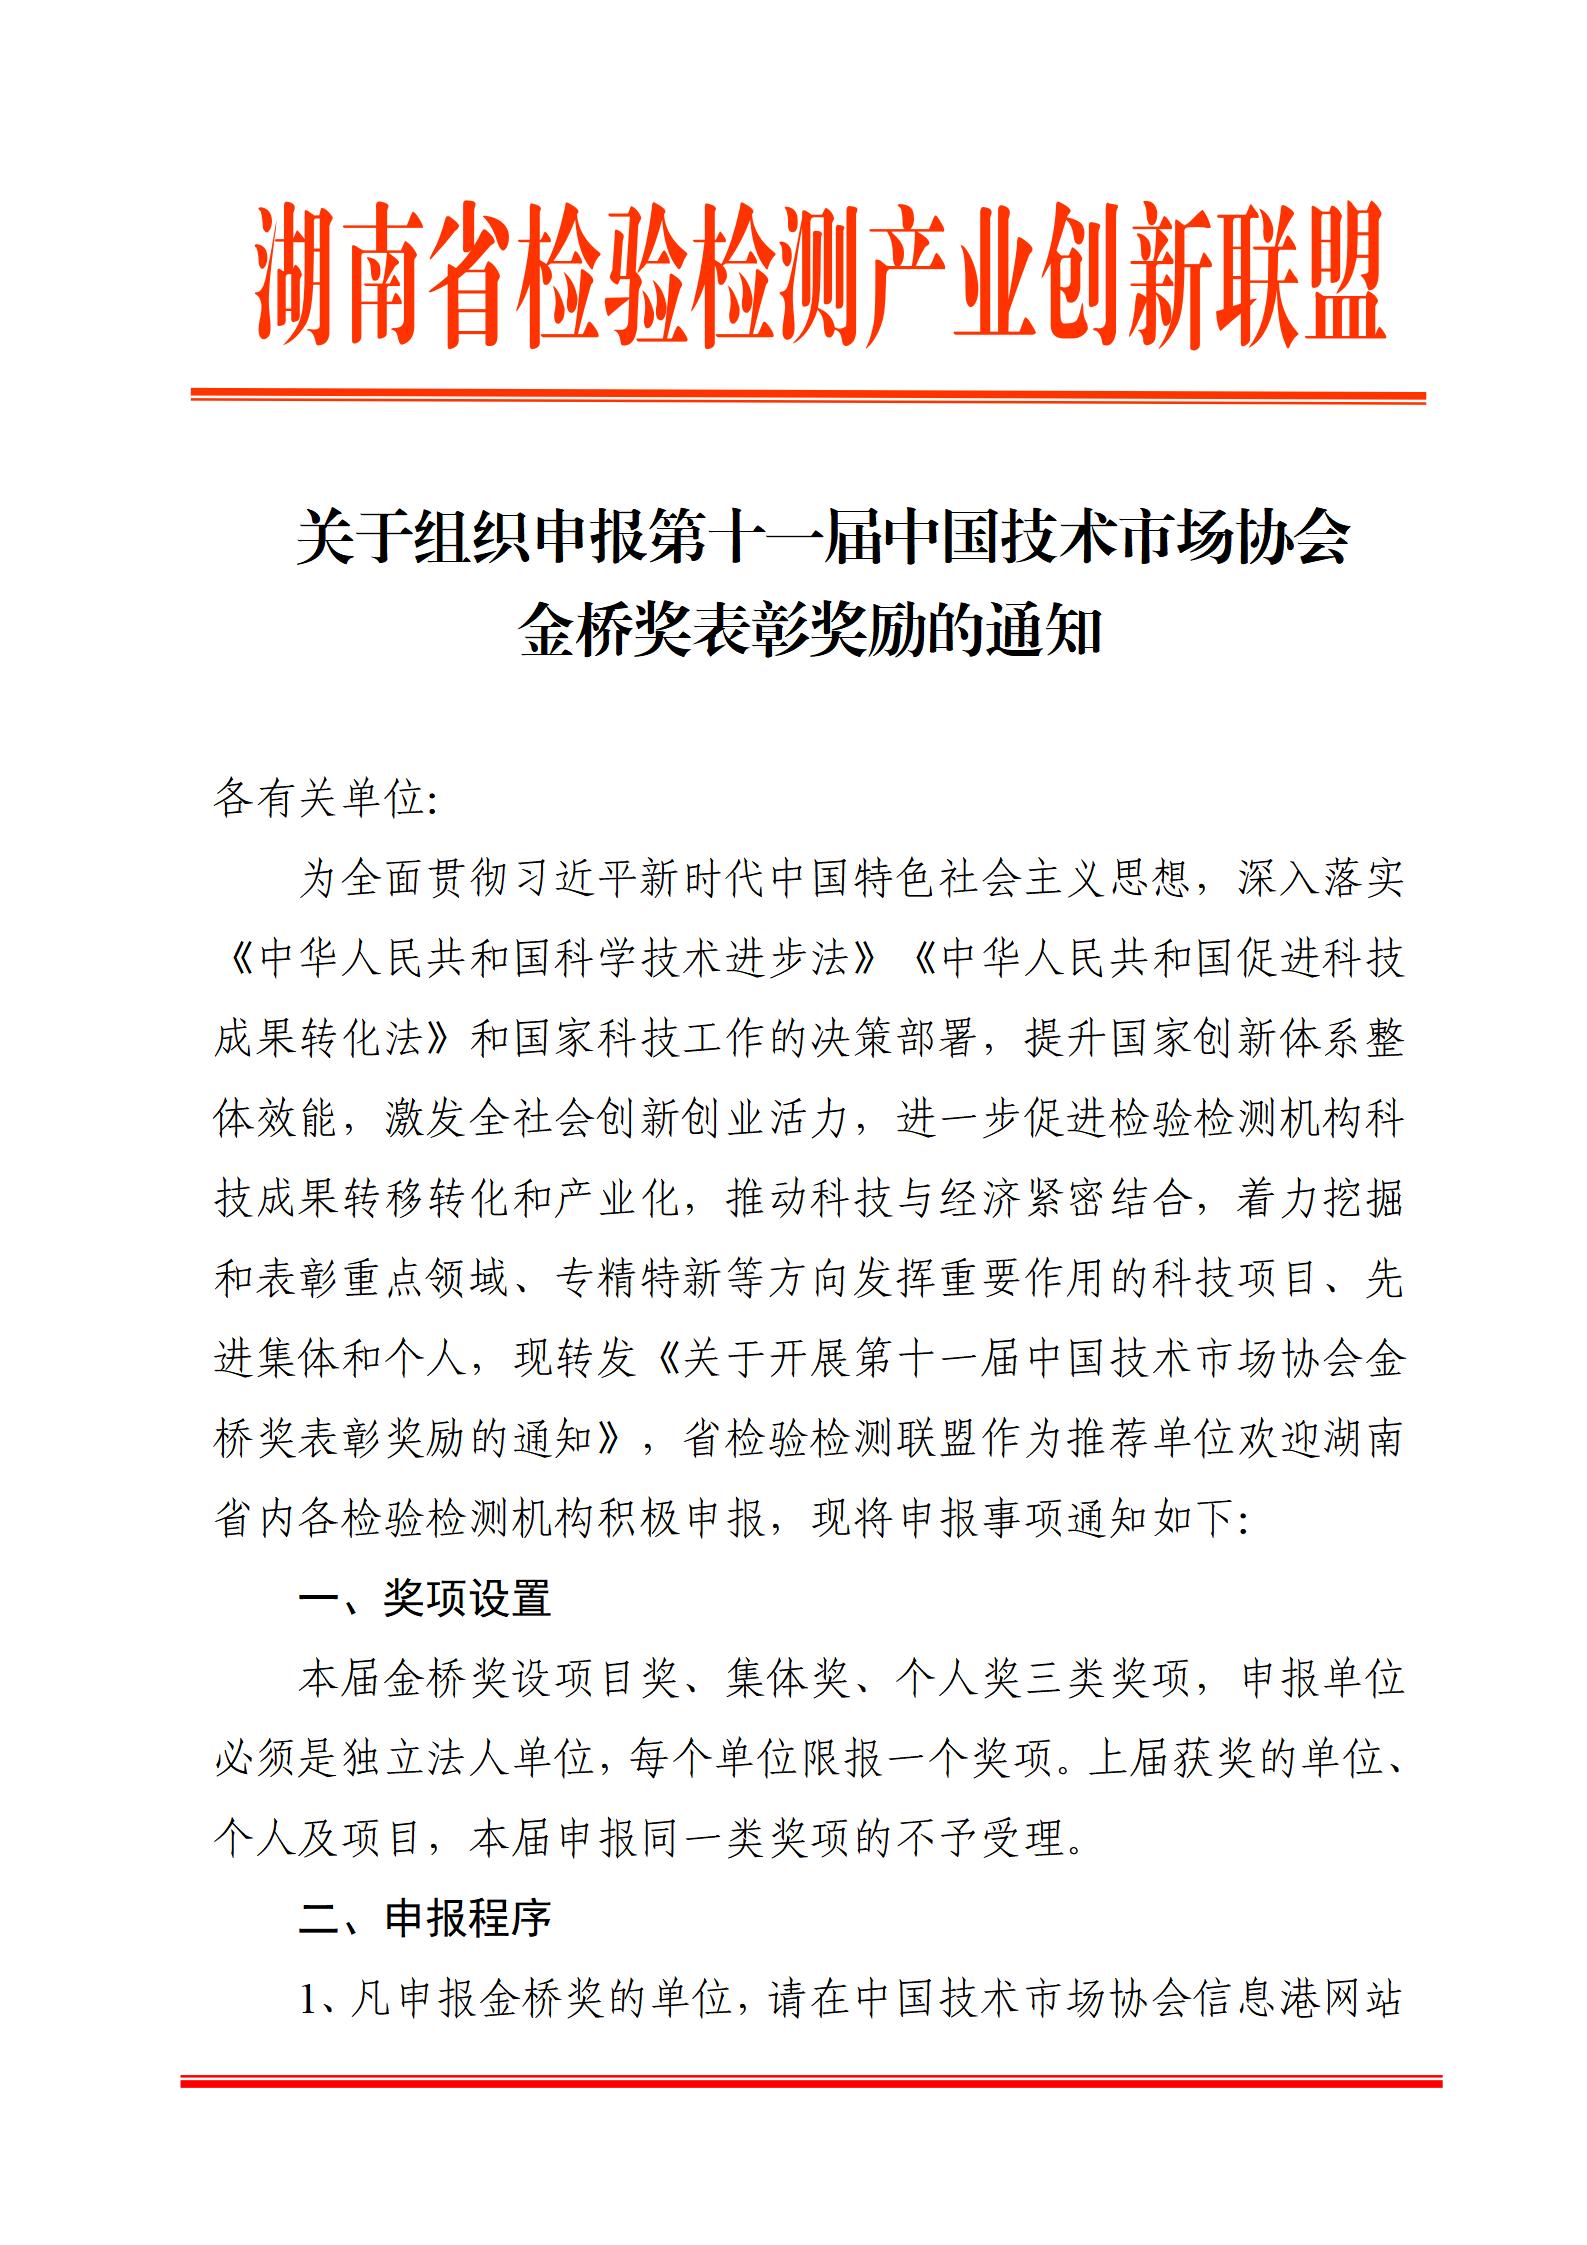 关于组织申报第十一届中国技术市场协会金桥奖表彰奖励的通知_01.jpg